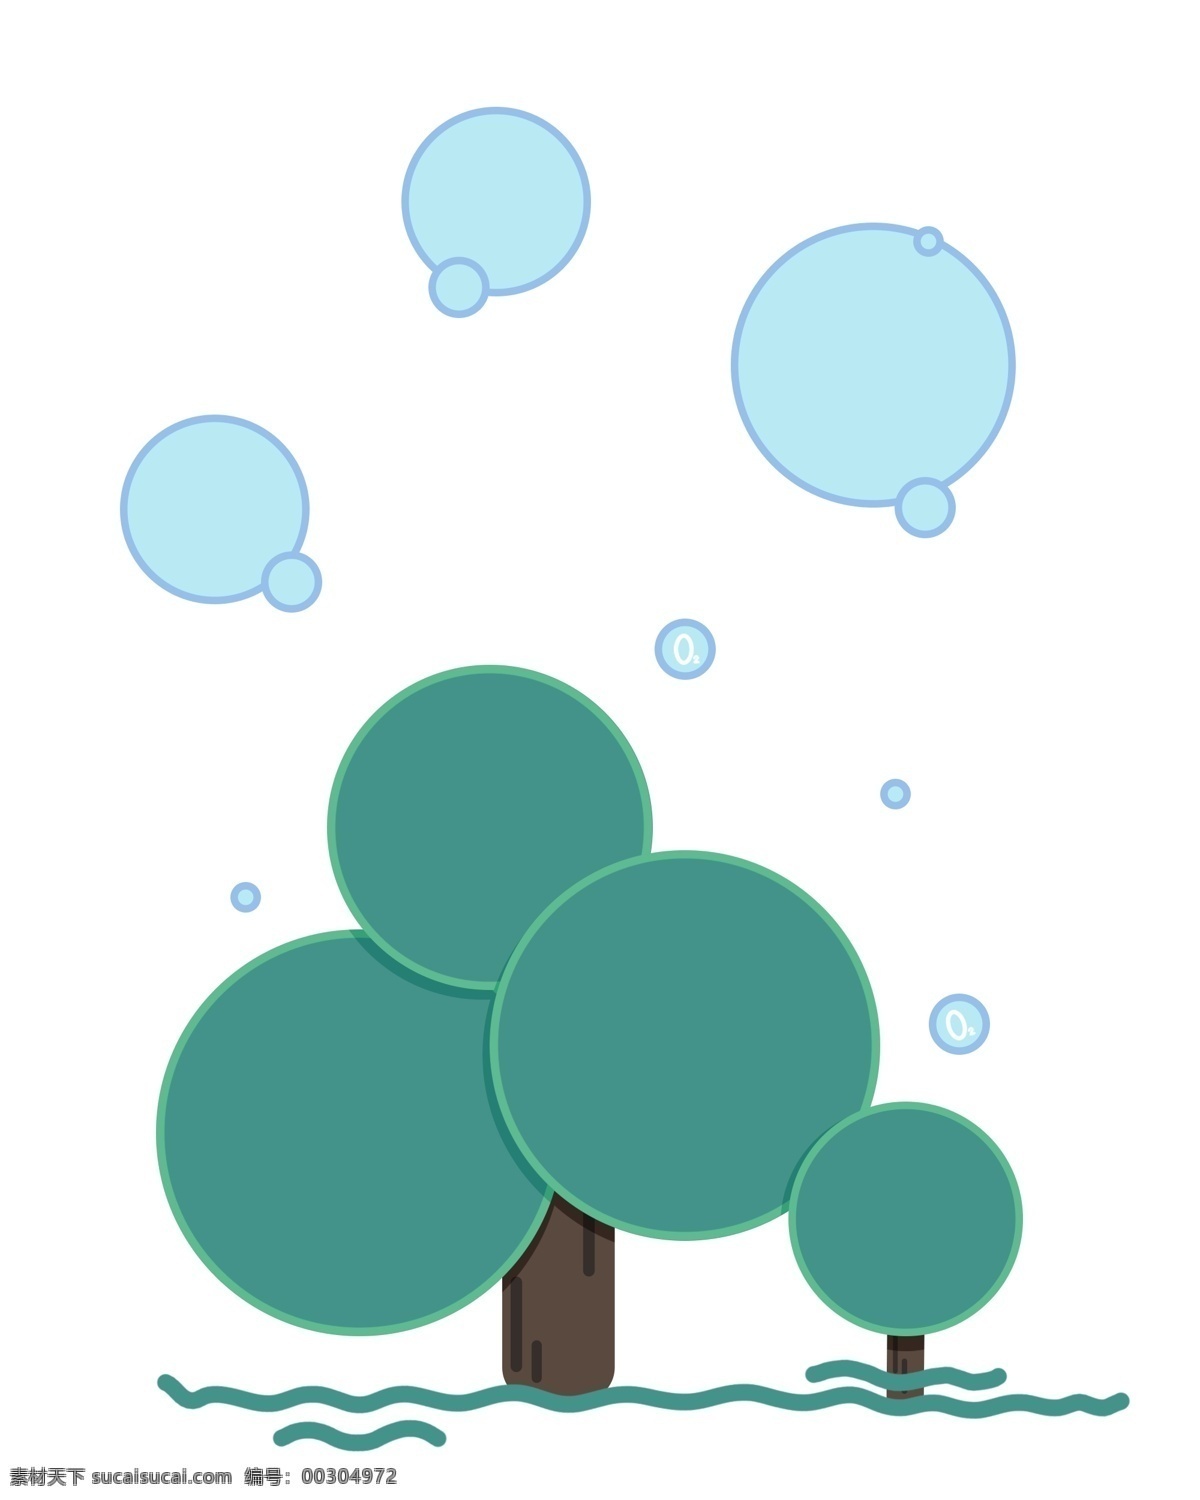 绿色 树木 装饰 插图 高大的树木 绿色叶子 叶子装饰 茂密的树叶 蓝色气泡 气泡装饰 可爱装饰 精美设计